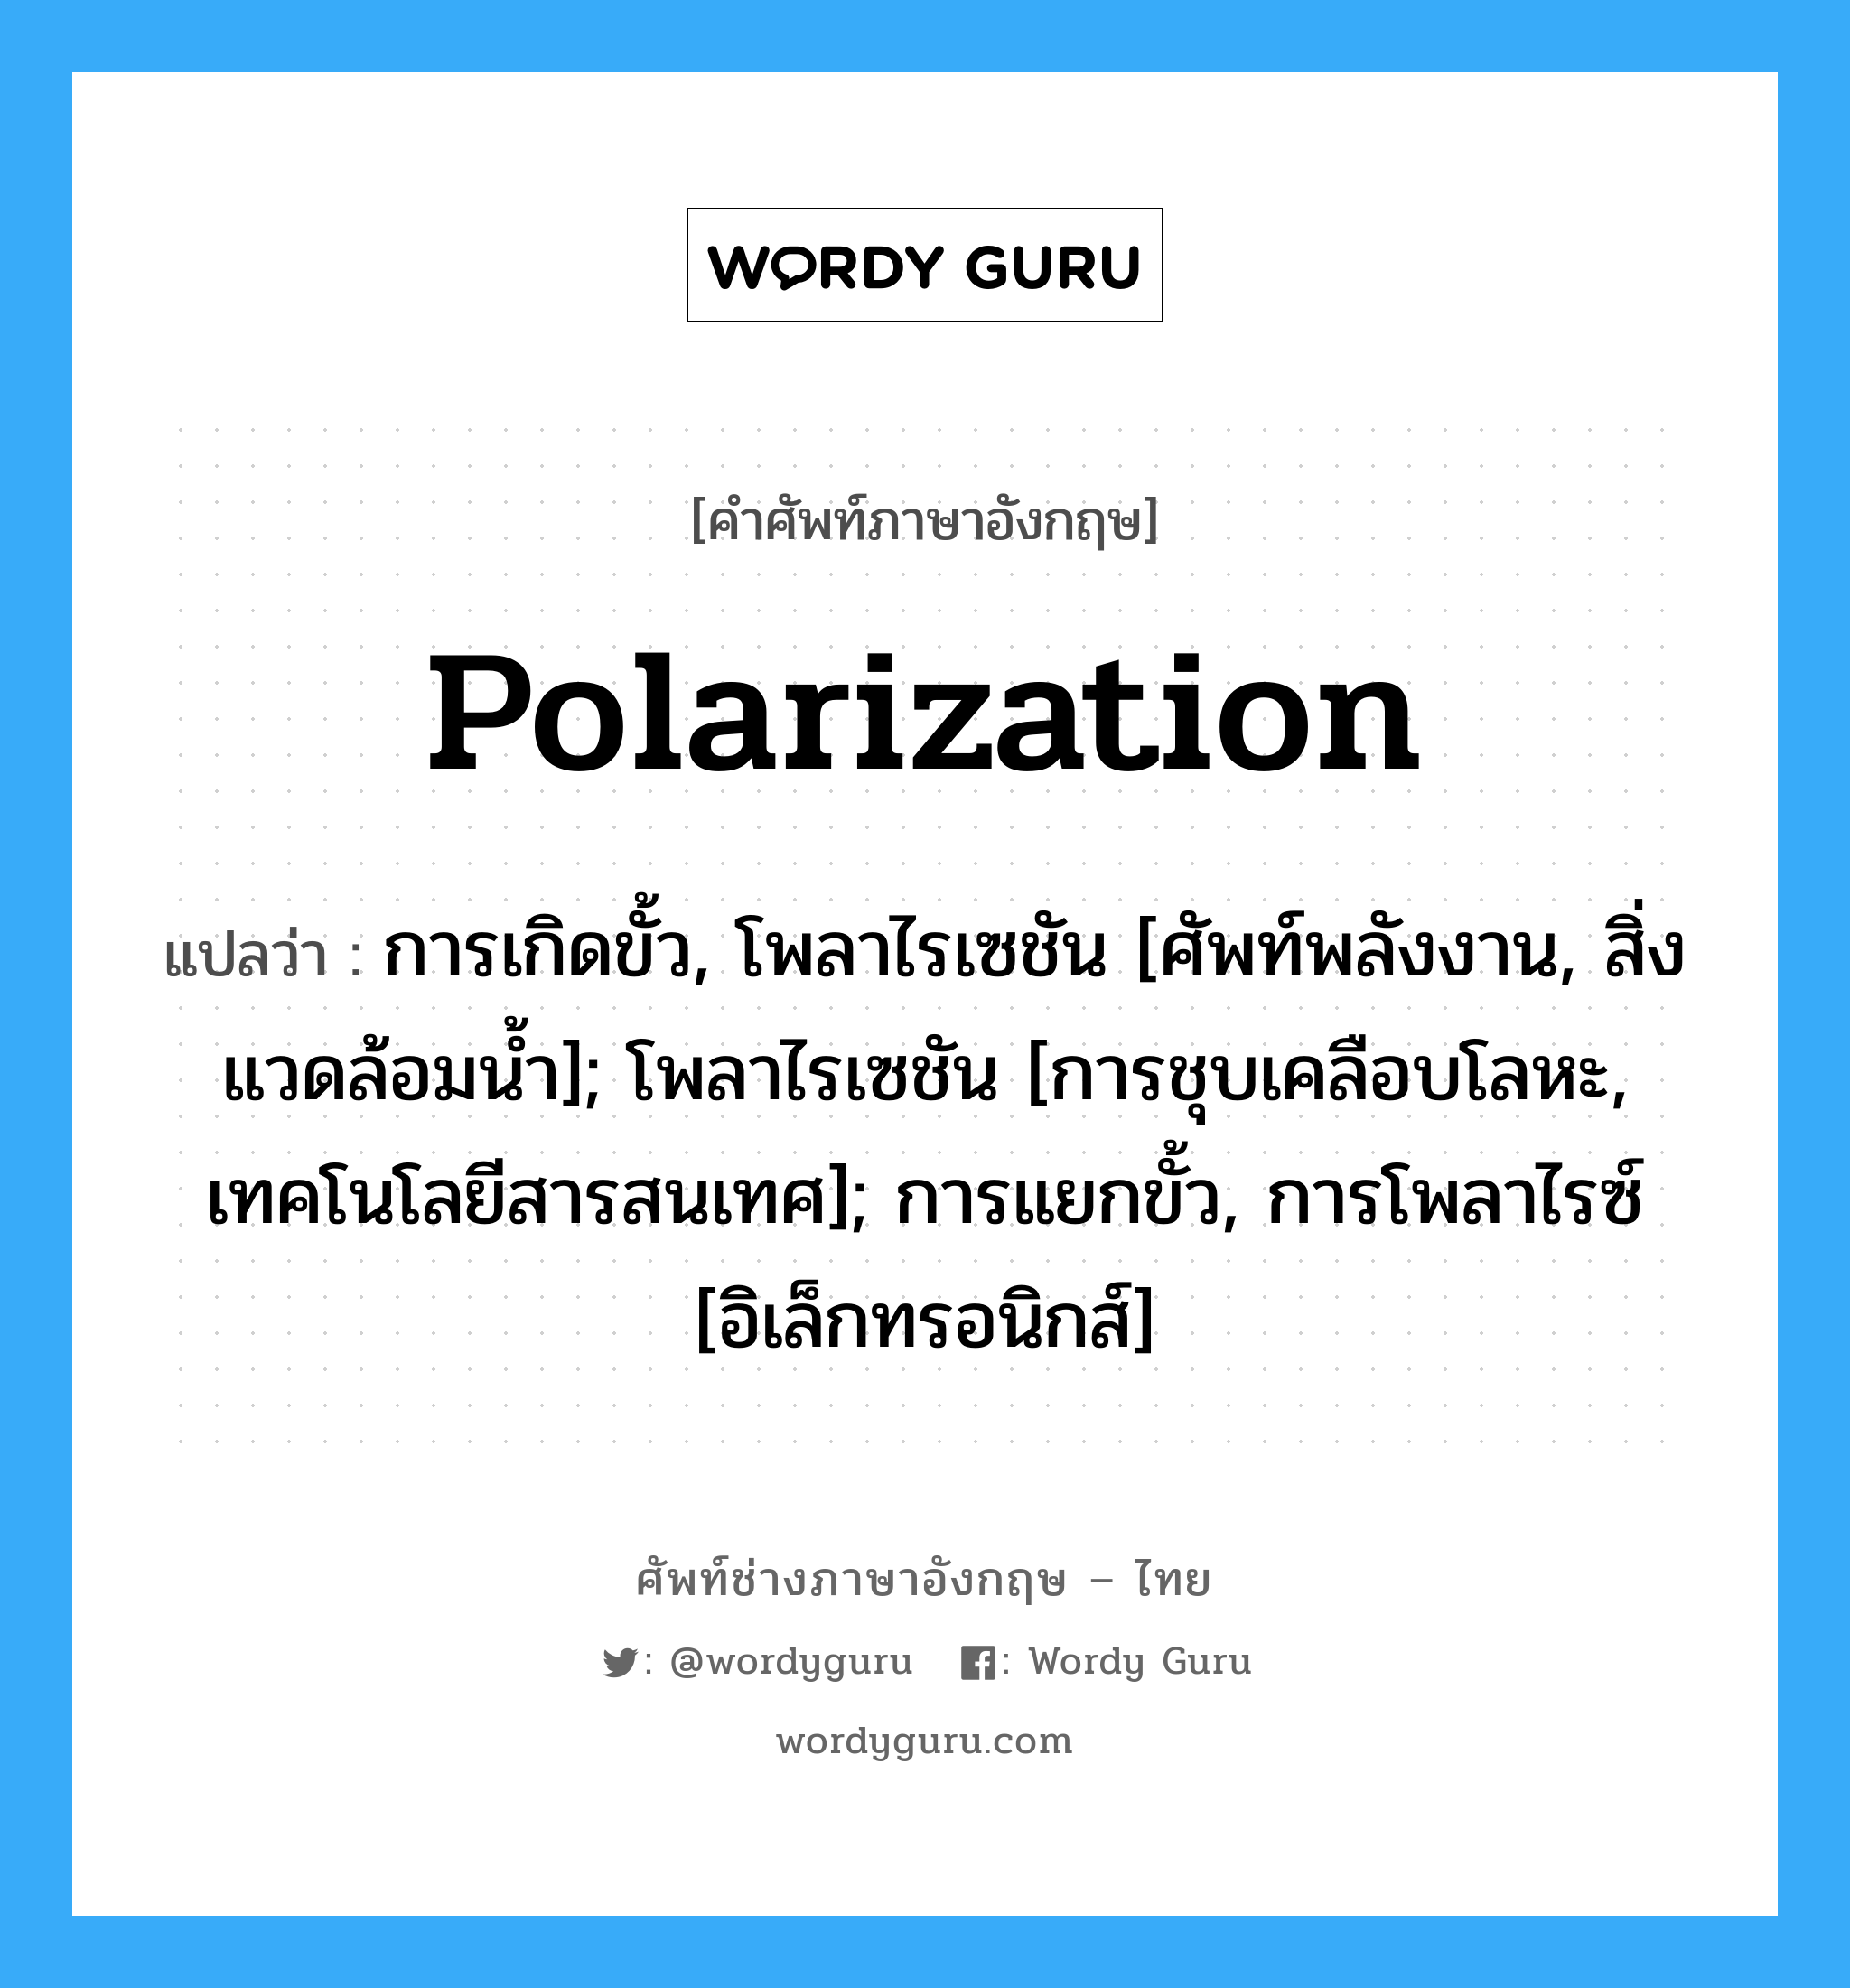 Polarization แปลว่า?, คำศัพท์ช่างภาษาอังกฤษ - ไทย Polarization คำศัพท์ภาษาอังกฤษ Polarization แปลว่า การเกิดขั้ว, โพลาไรเซชัน [ศัพท์พลังงาน, สิ่งแวดล้อมน้ำ]; โพลาไรเซชัน [การชุบเคลือบโลหะ, เทคโนโลยีสารสนเทศ]; การแยกขั้ว, การโพลาไรซ์ [อิเล็กทรอนิกส์]